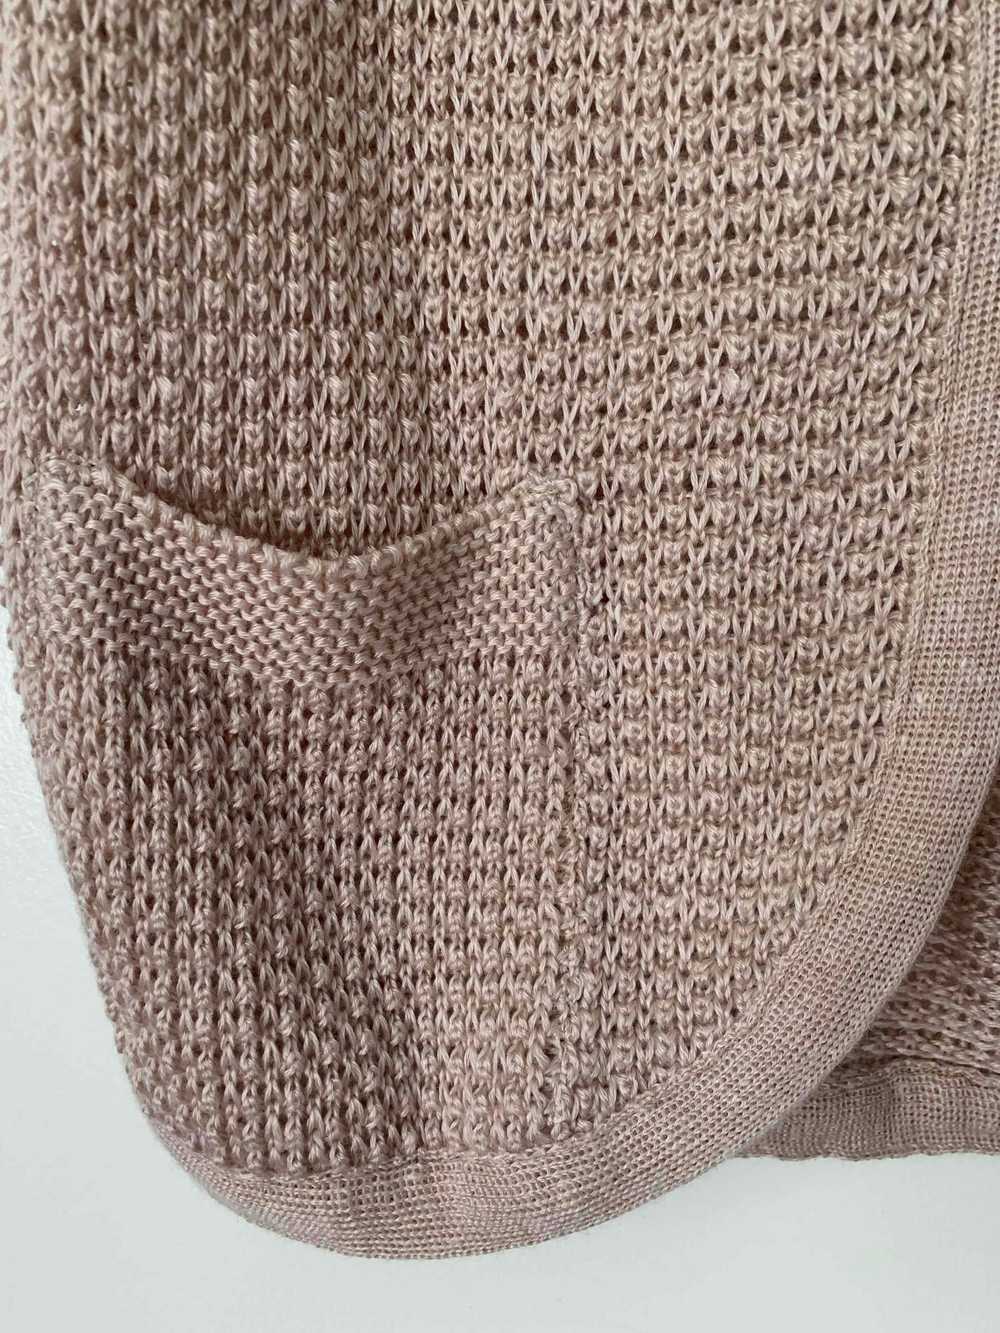 Knit vest - Sleeveless knit cardigan, open withou… - image 2